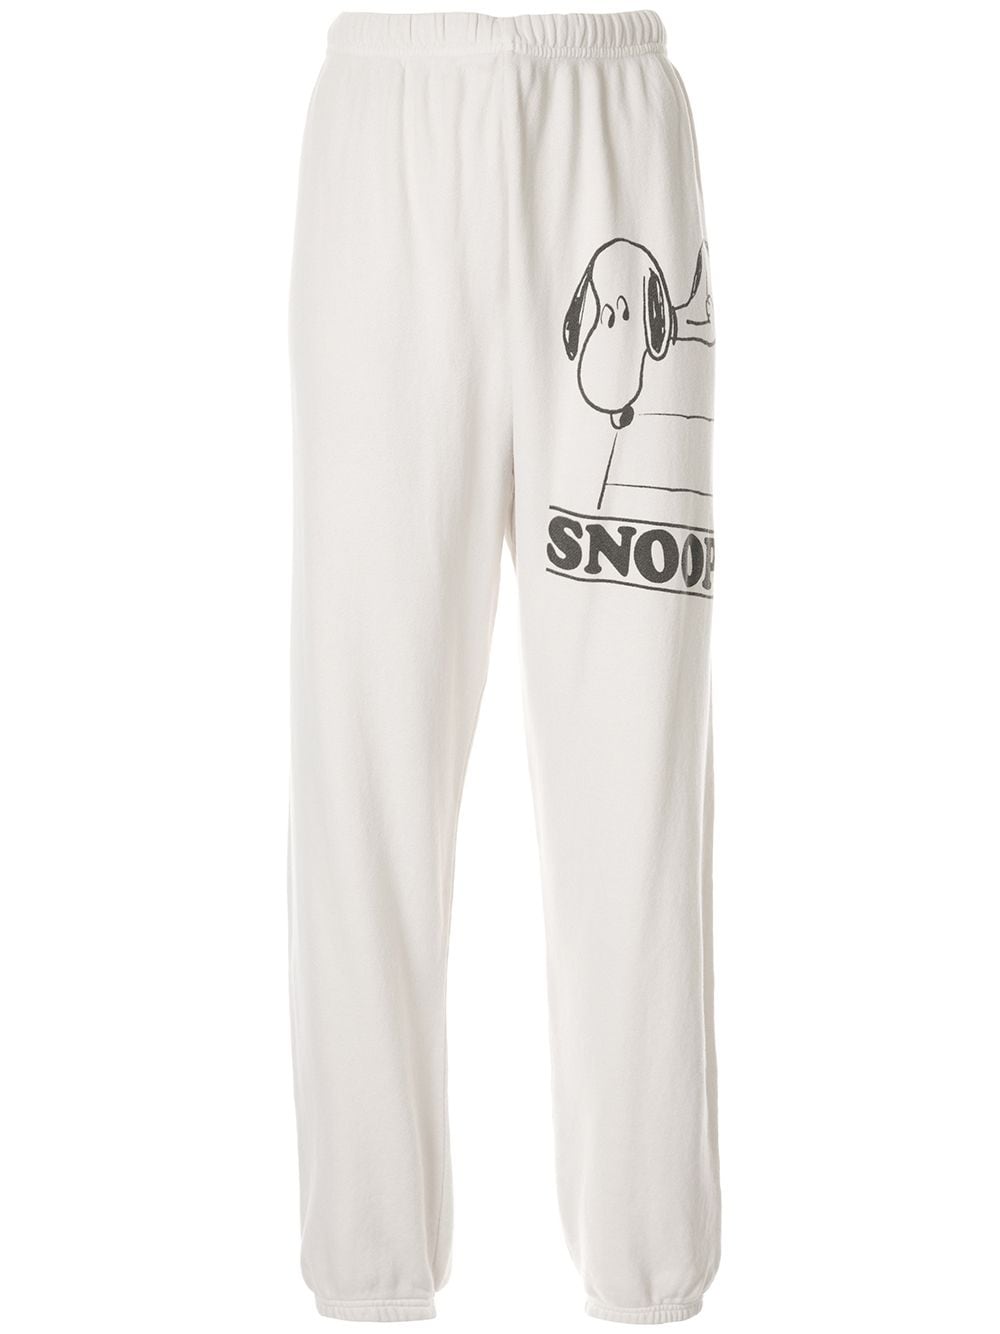 фото Marc Jacobs спортивные брюки Snoopy